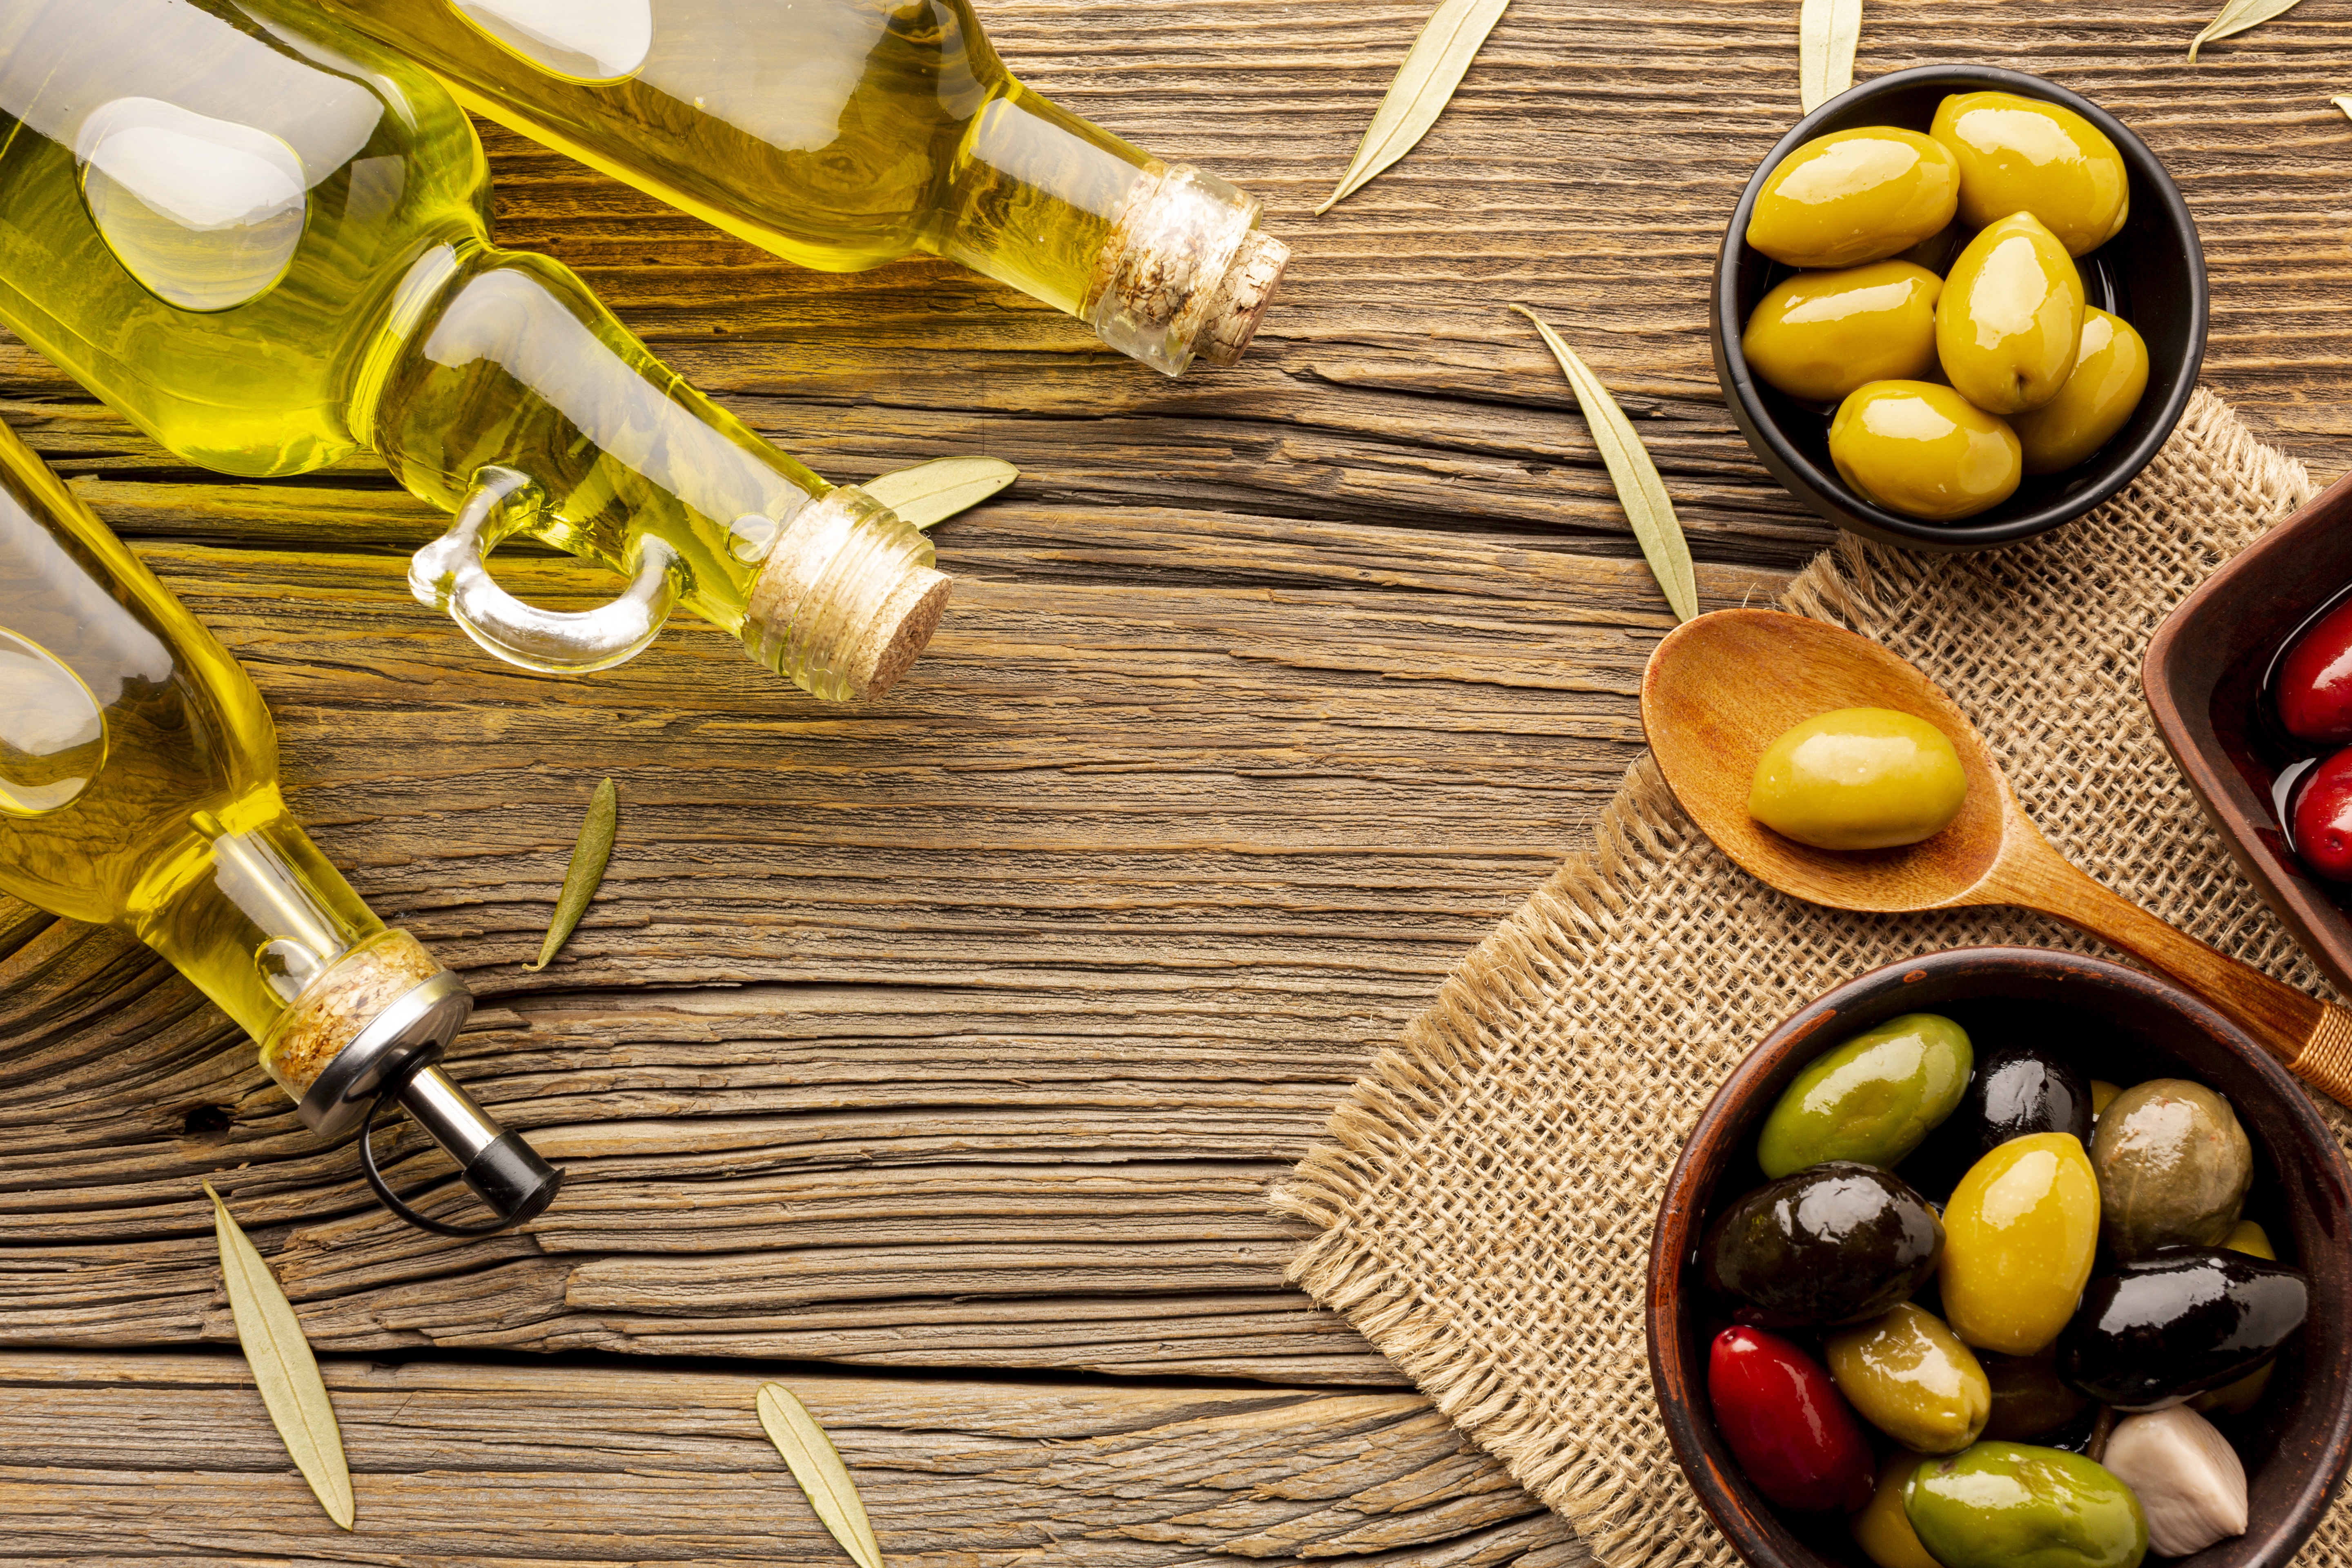 Оливковое масло имеет. Оливковое масло. Бутылка оливкового масла. Оливки фон. Оливковое масло фото.